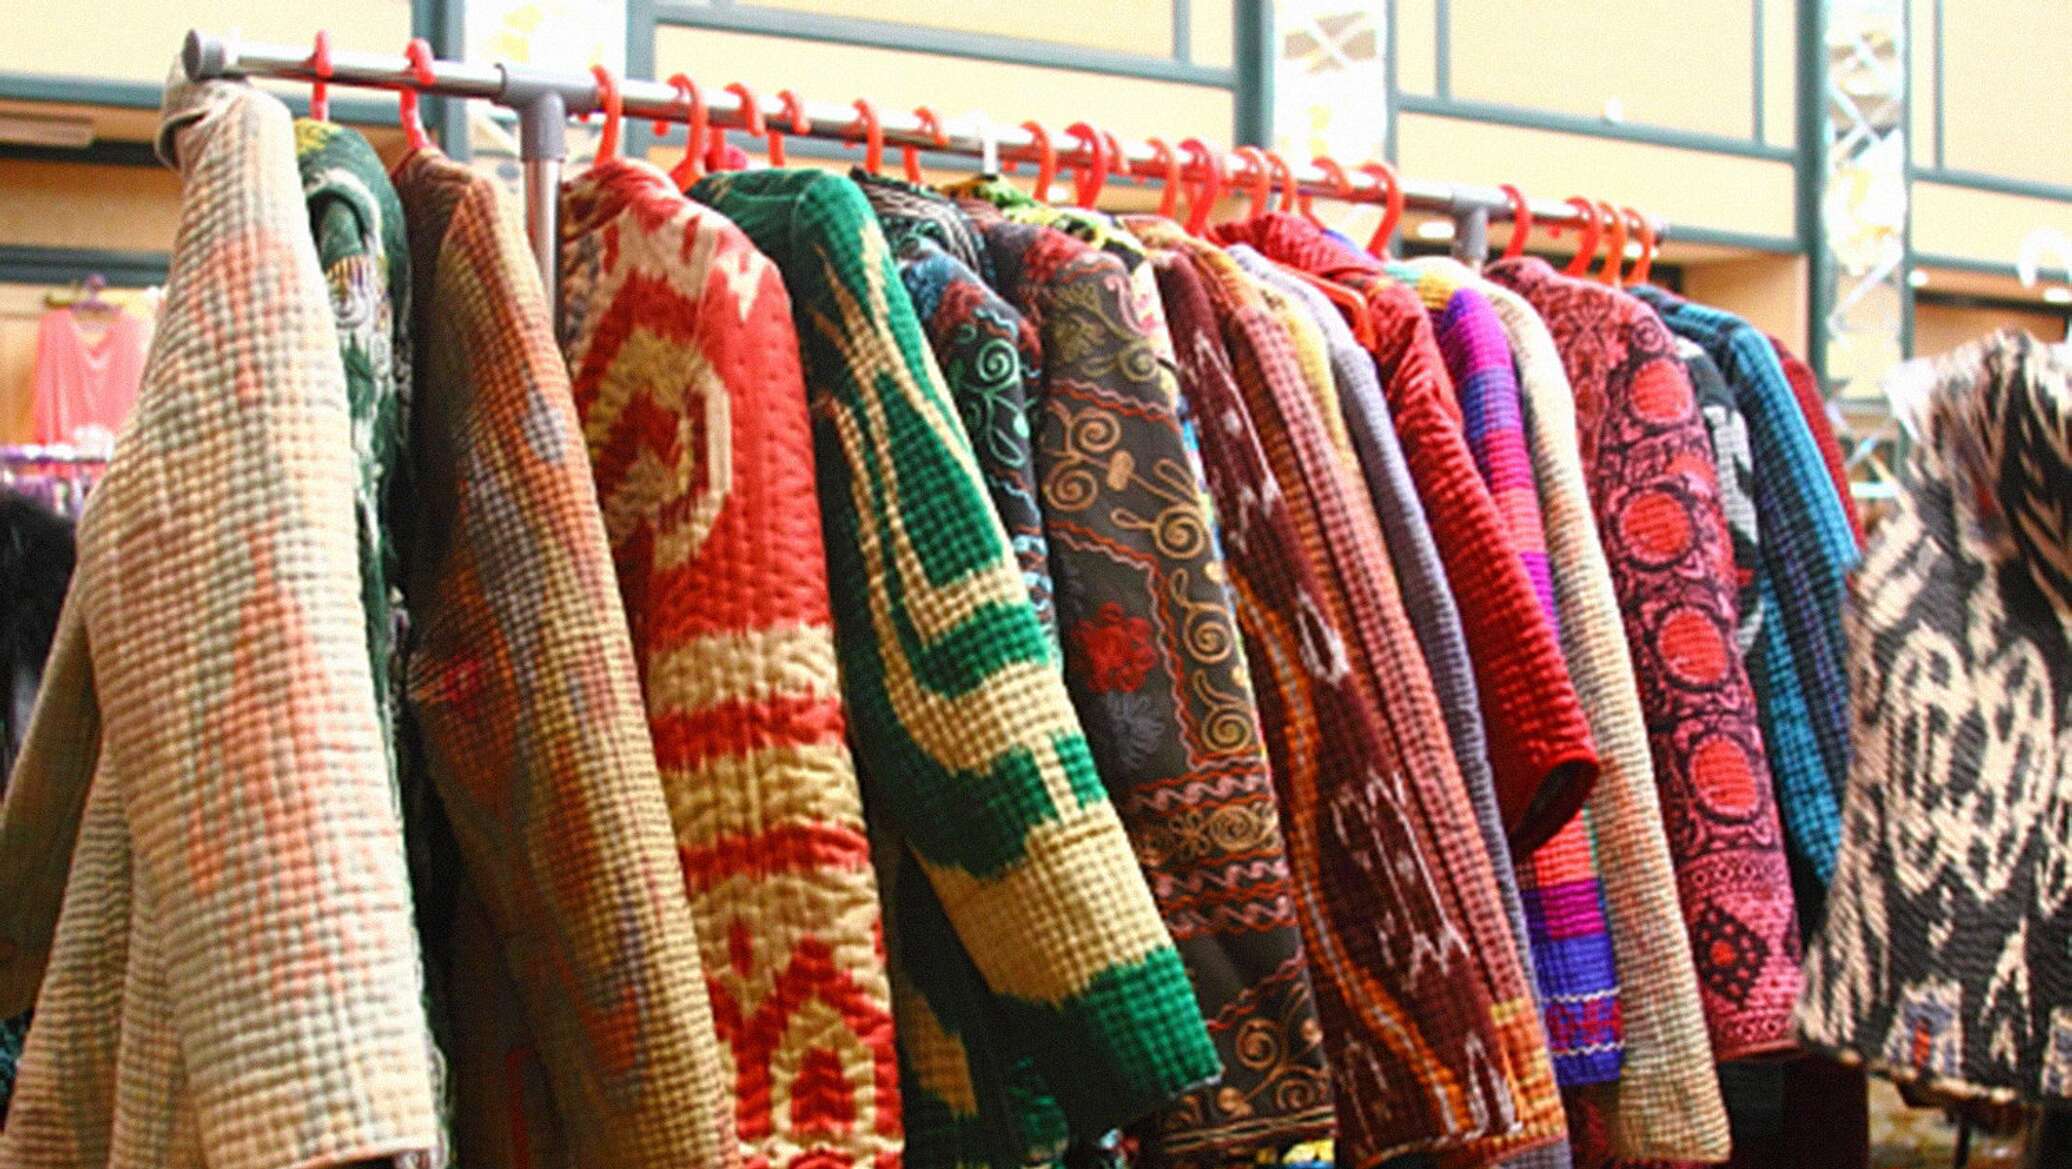 Узбекских оптом. Узбекский трикотаж. Текстильные изделия Узбекистана. Киргизский трикотаж. Узбекские ткани одежда.